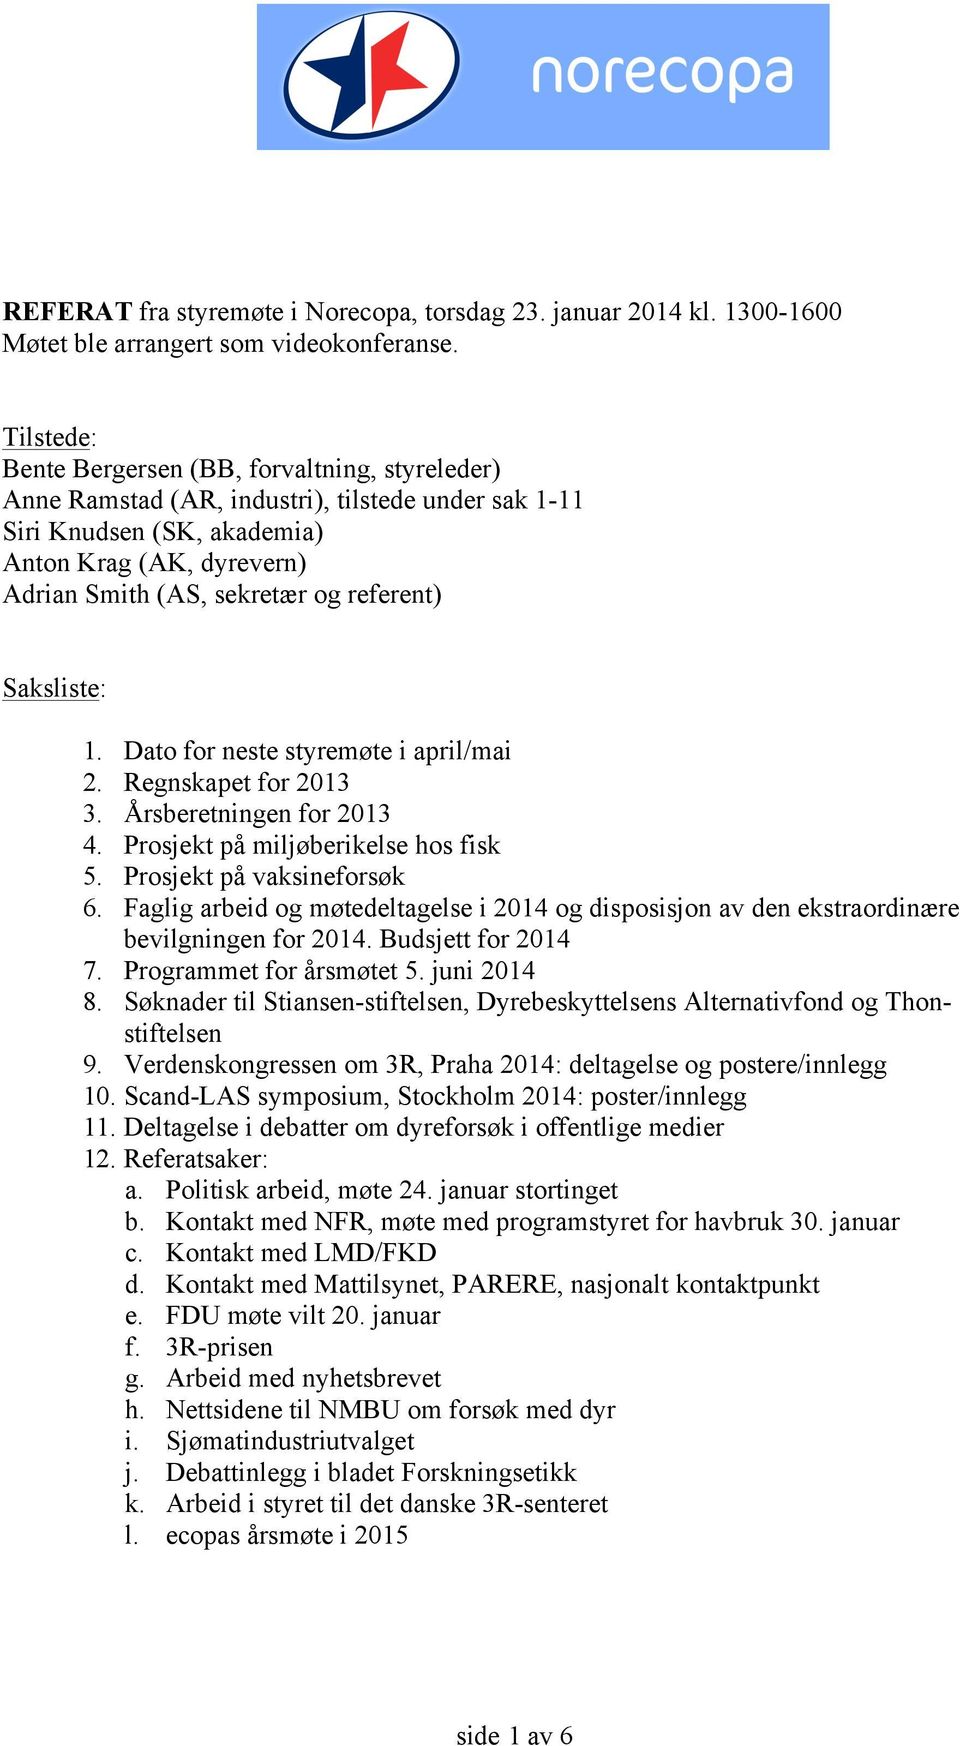 referent) Saksliste: 1. Dato for neste styremøte i april/mai 2. Regnskapet for 2013 3. Årsberetningen for 2013 4. Prosjekt på miljøberikelse hos fisk 5. Prosjekt på vaksineforsøk 6.